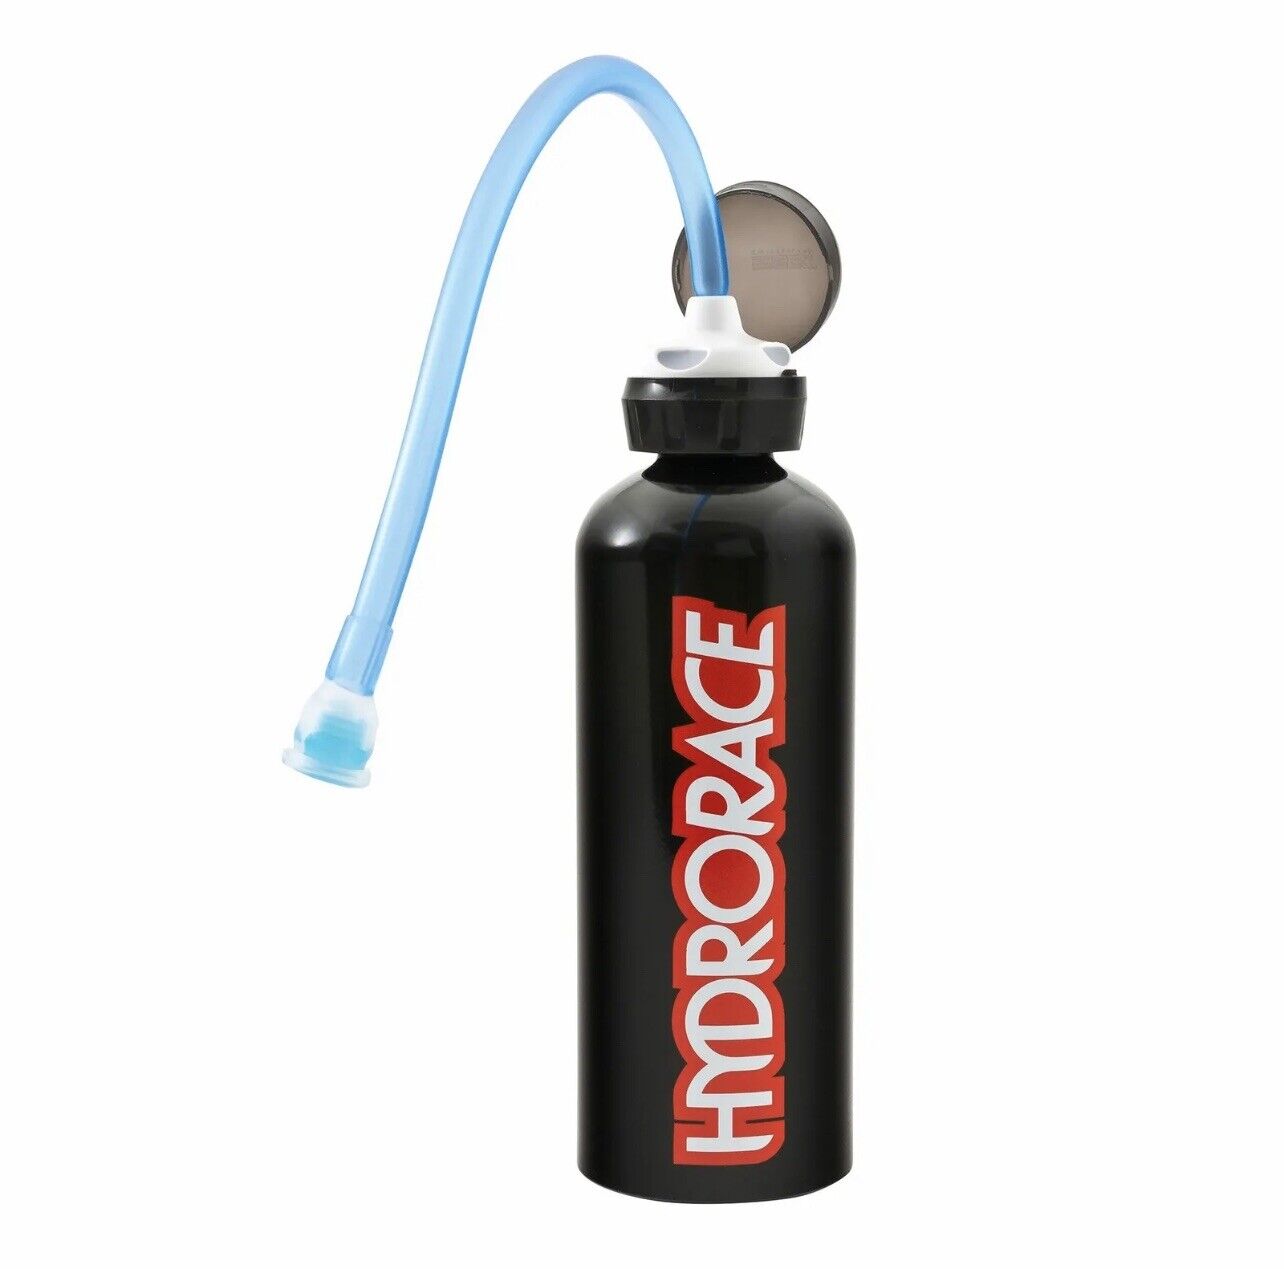 Hydrorace Motorsport / Pit / Paddock Metal Drinks Bottle With Long Tube In Black